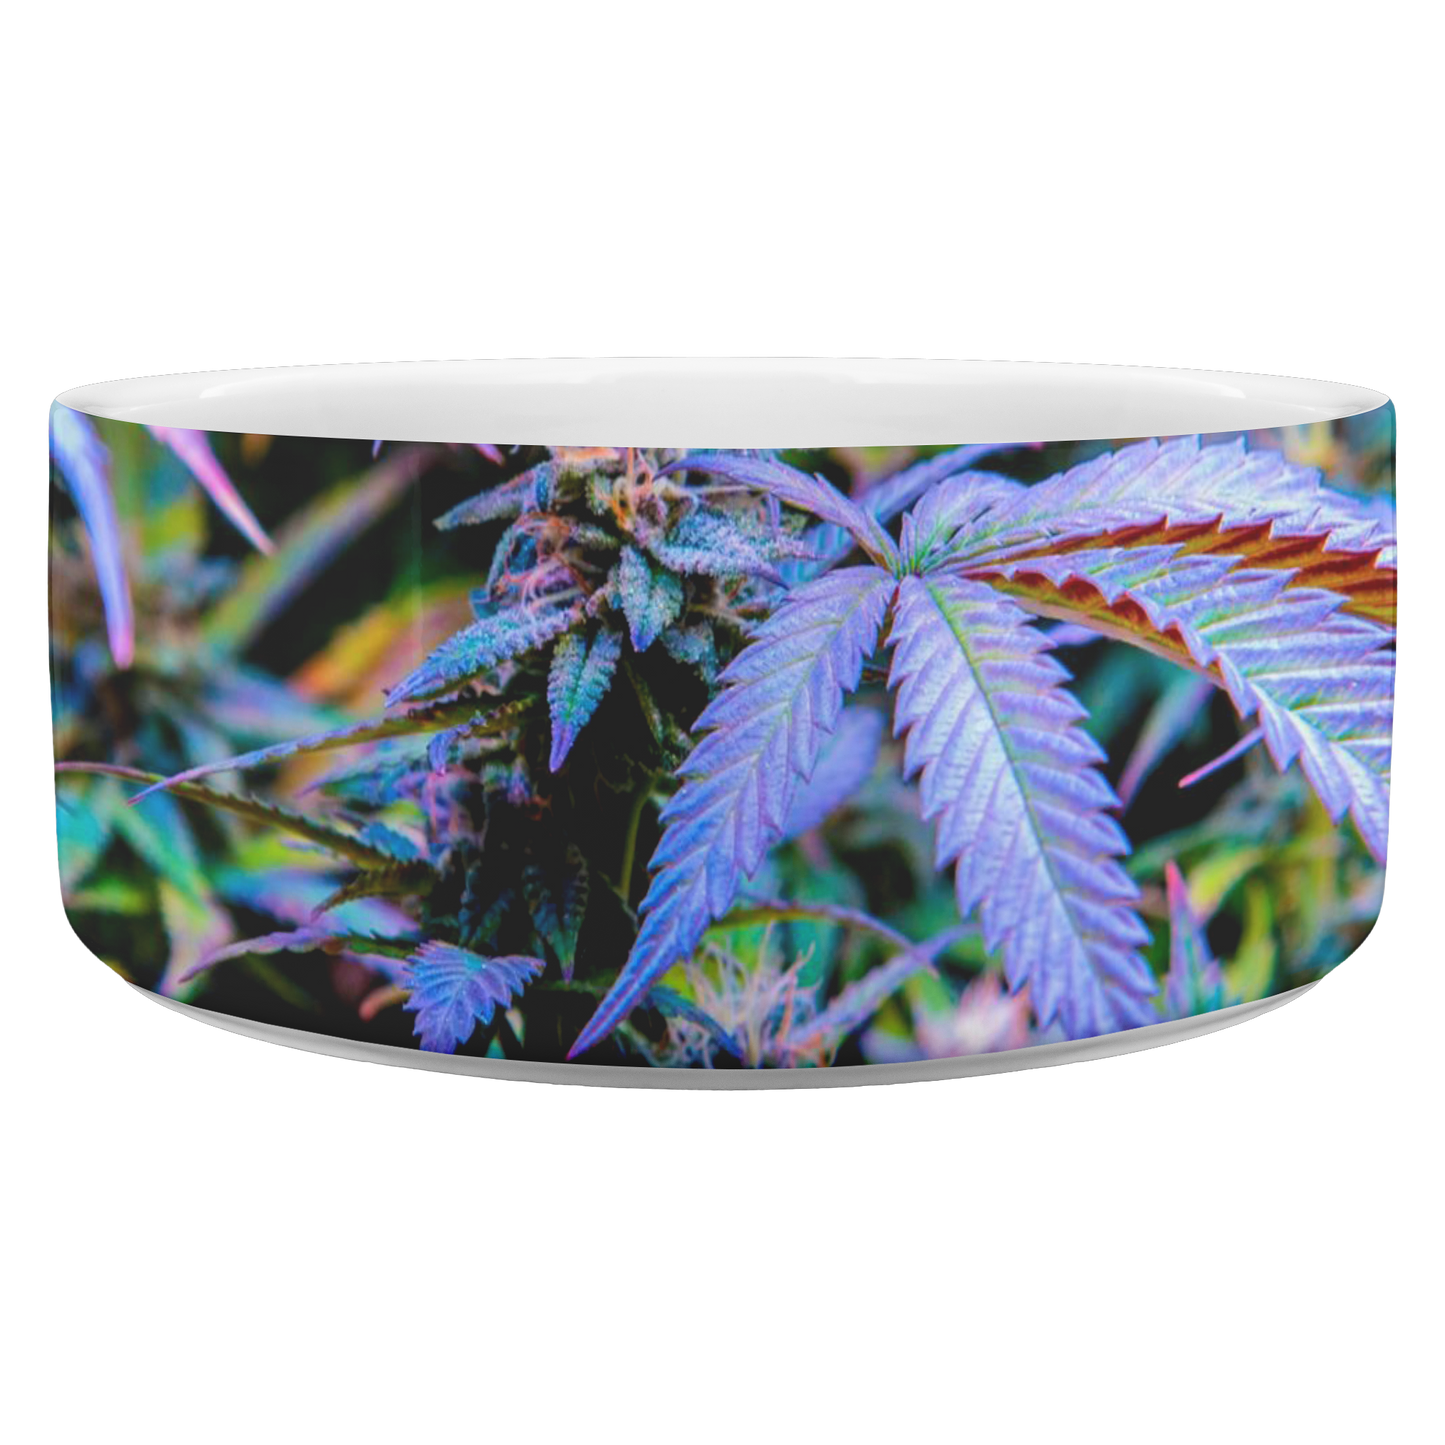 The Rainbow Cannabis Pet Bowl